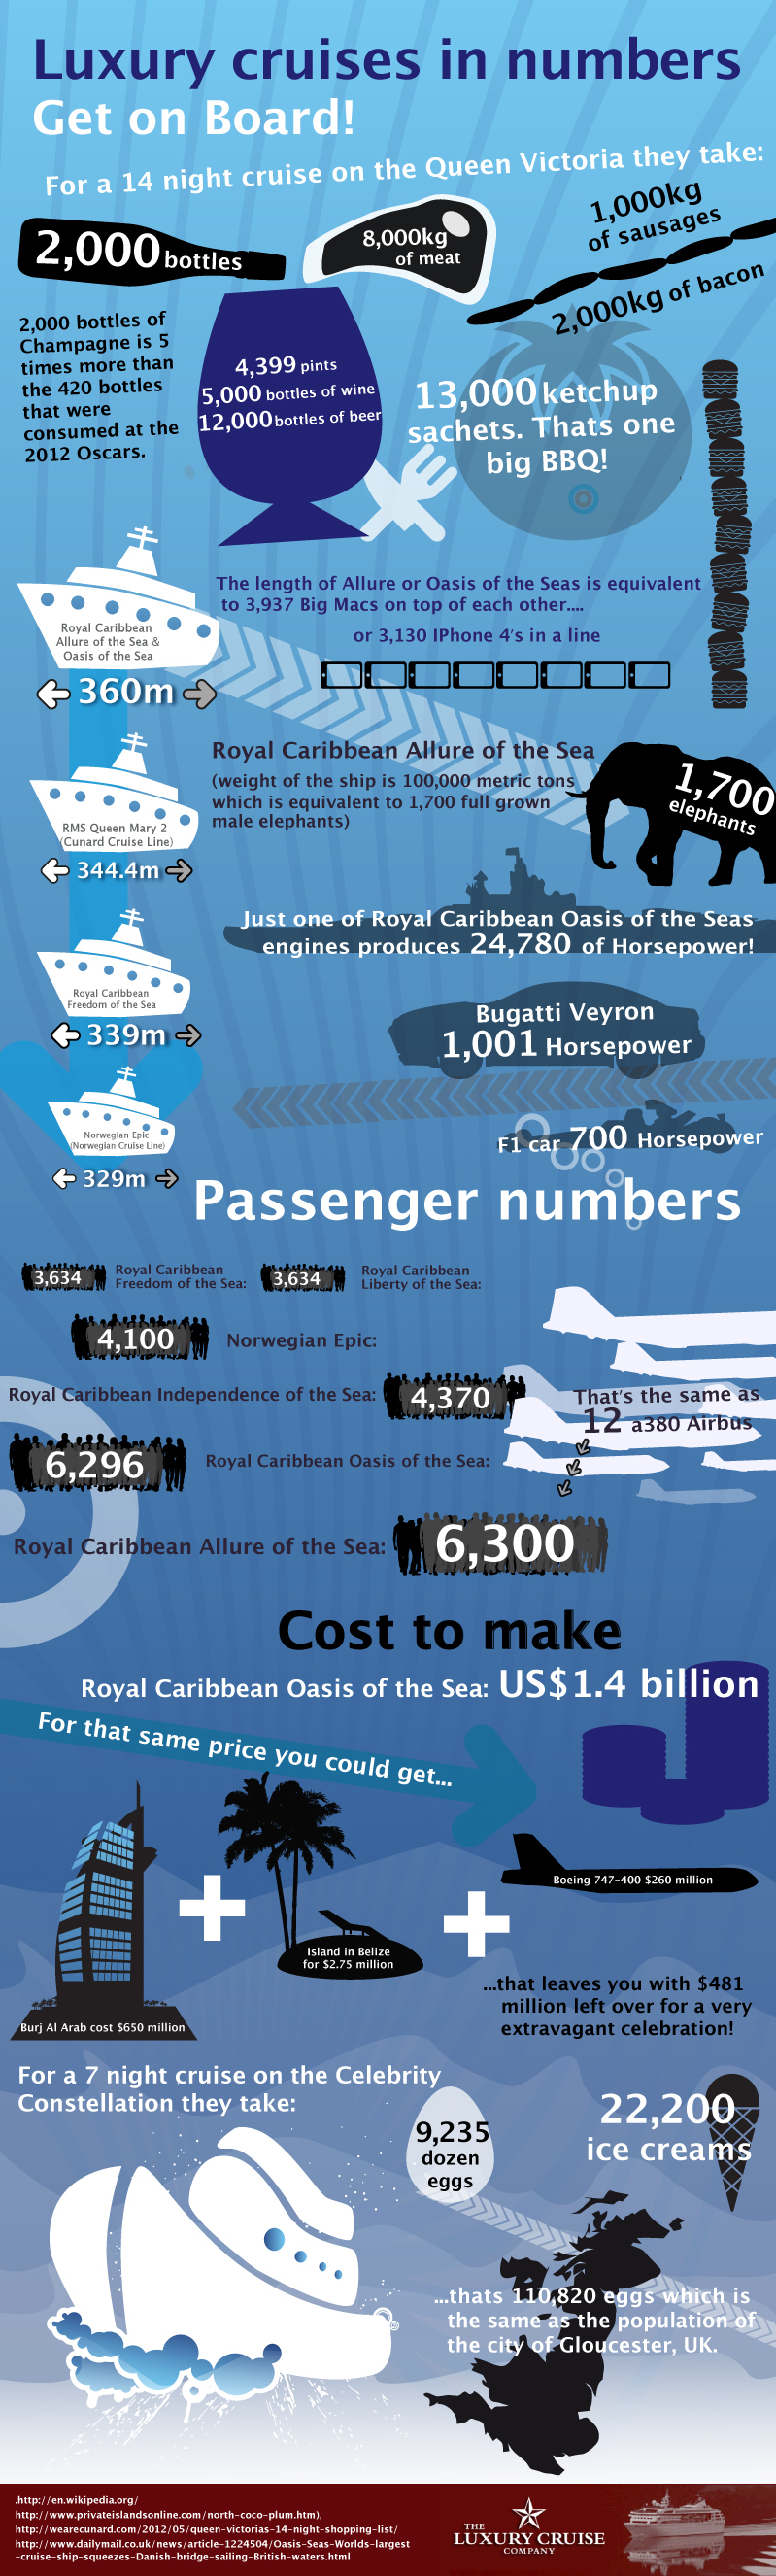 Luxury cruises Infographic